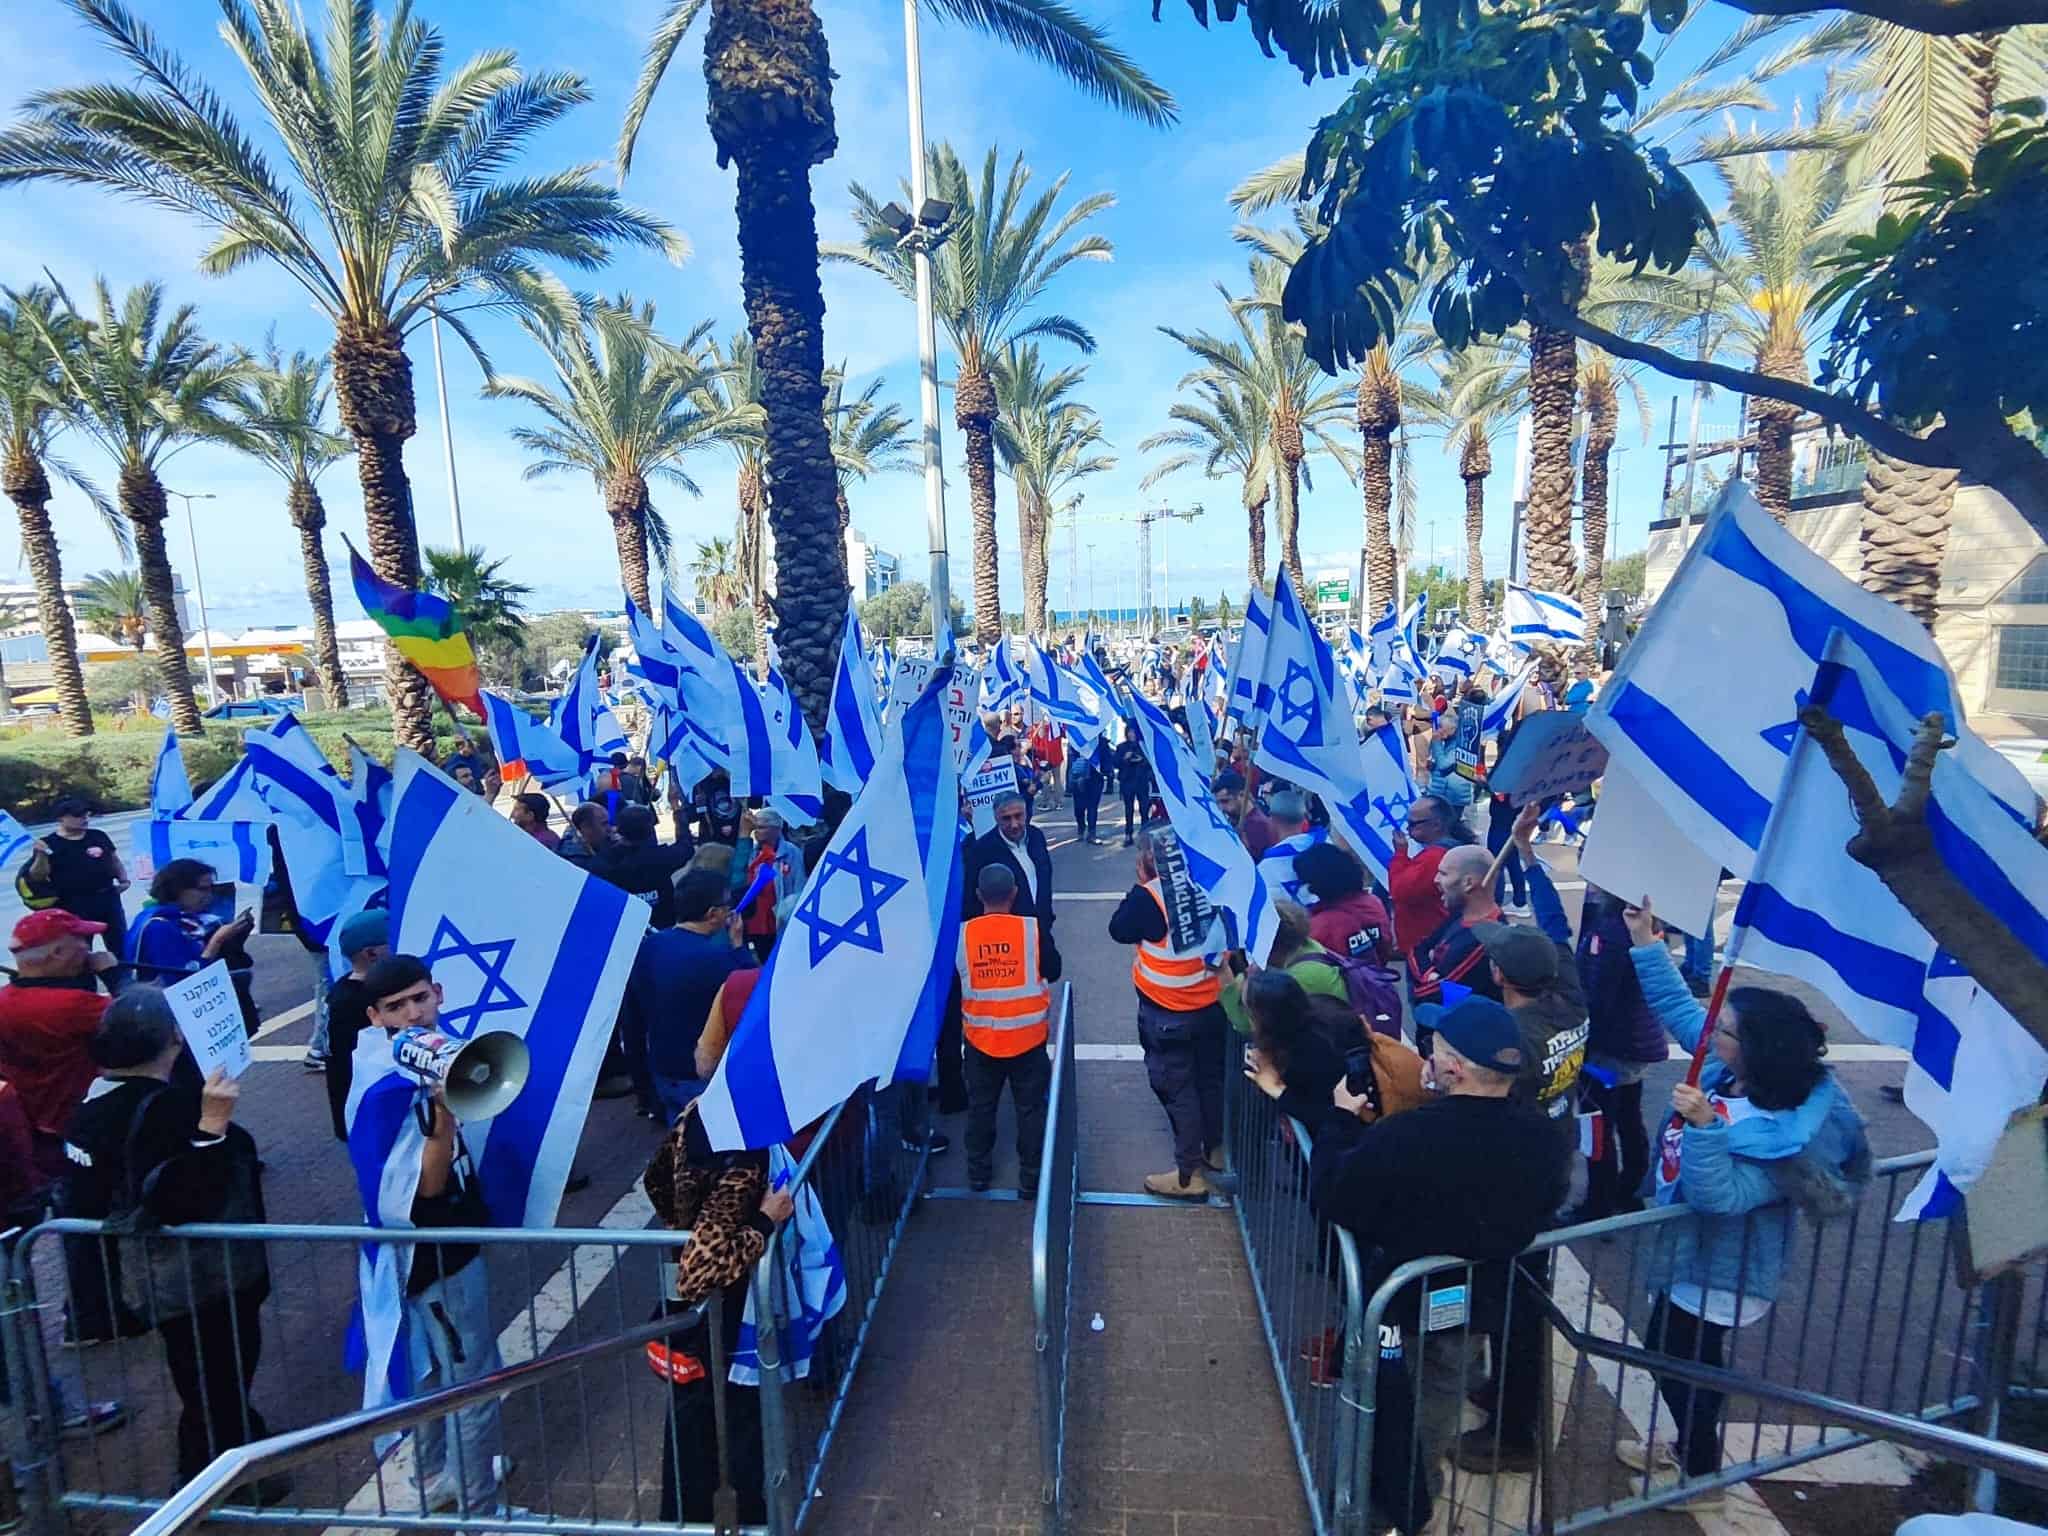 וועידת המפרץ בחיפה נפתחה בצל הפגנה גדולה | צפו בסיקור